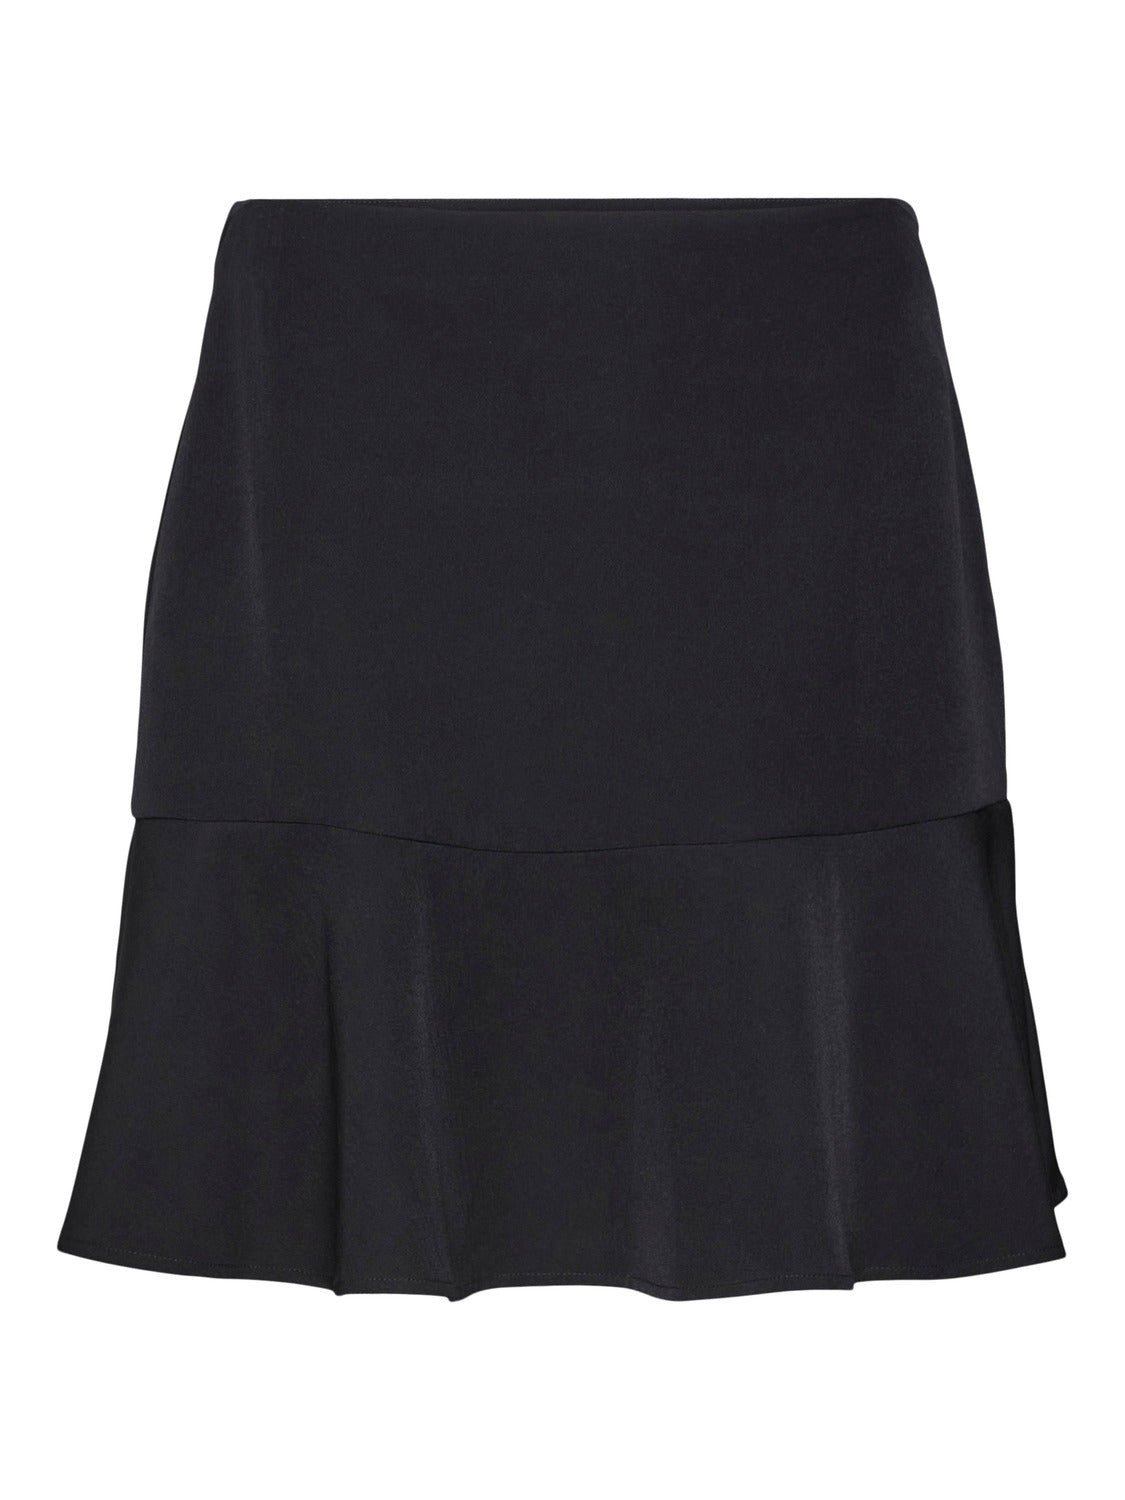 VMLINA Skirt - Black